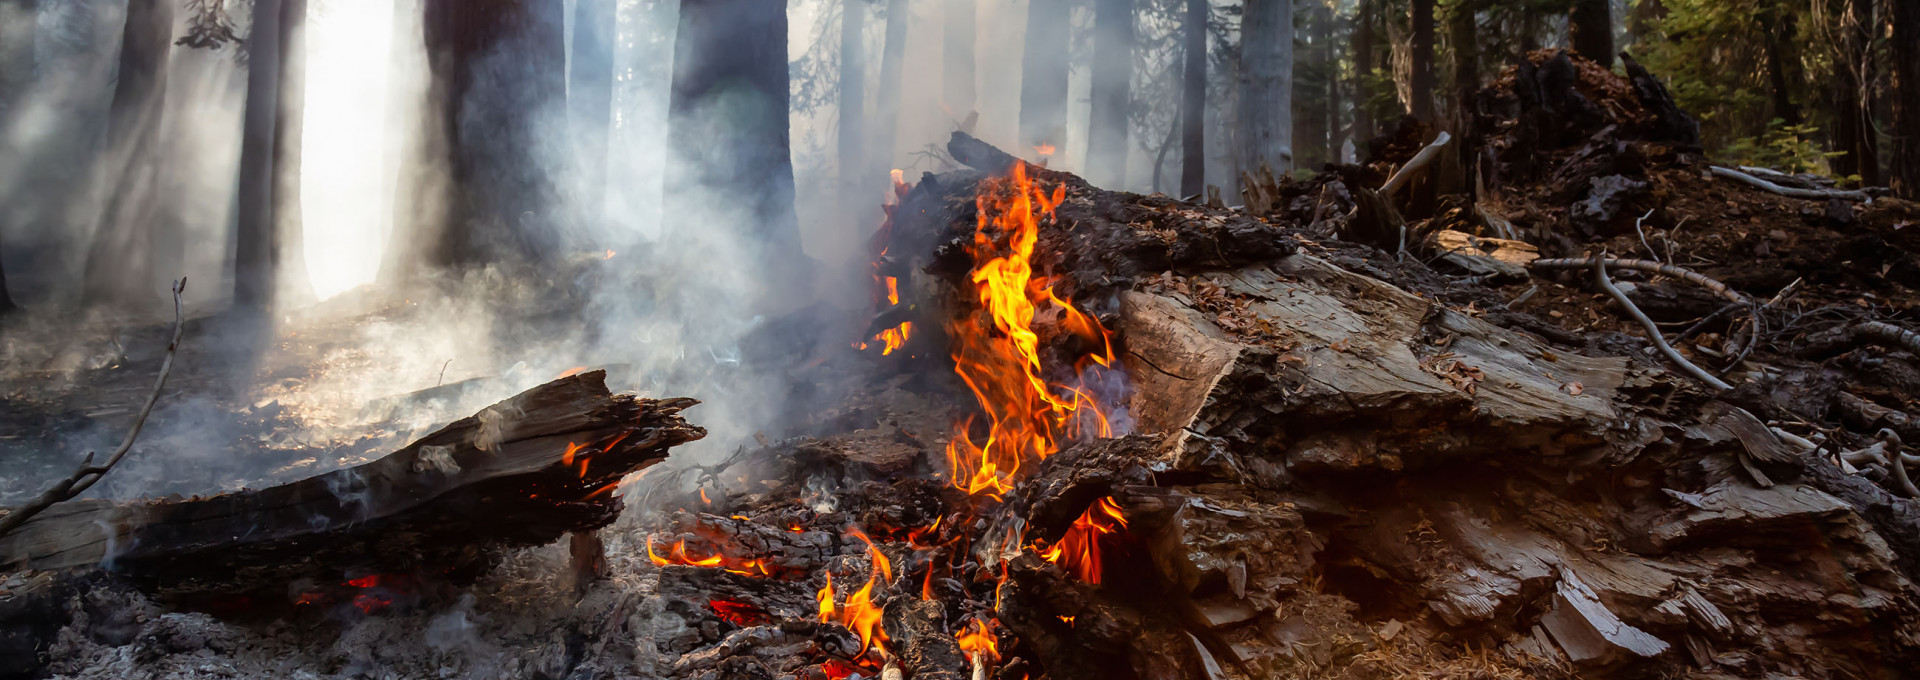 In einem Wald brennt Holz, darüber raucht es